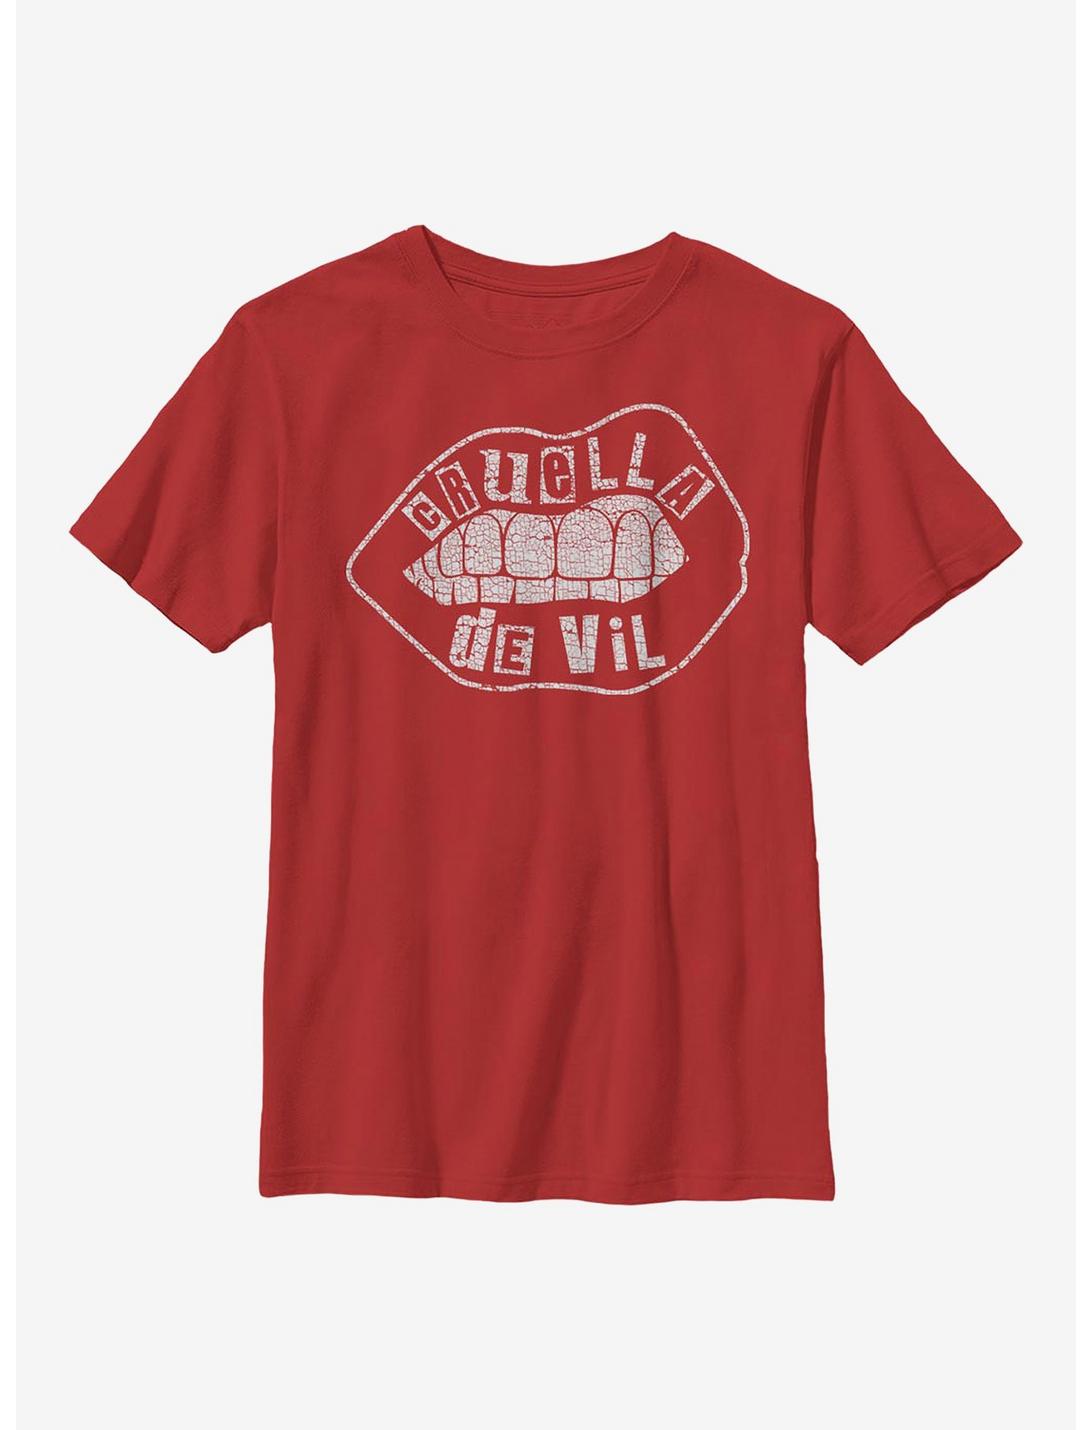 Disney Cruella De Vil Lip Design Youth T-Shirt, RED, hi-res